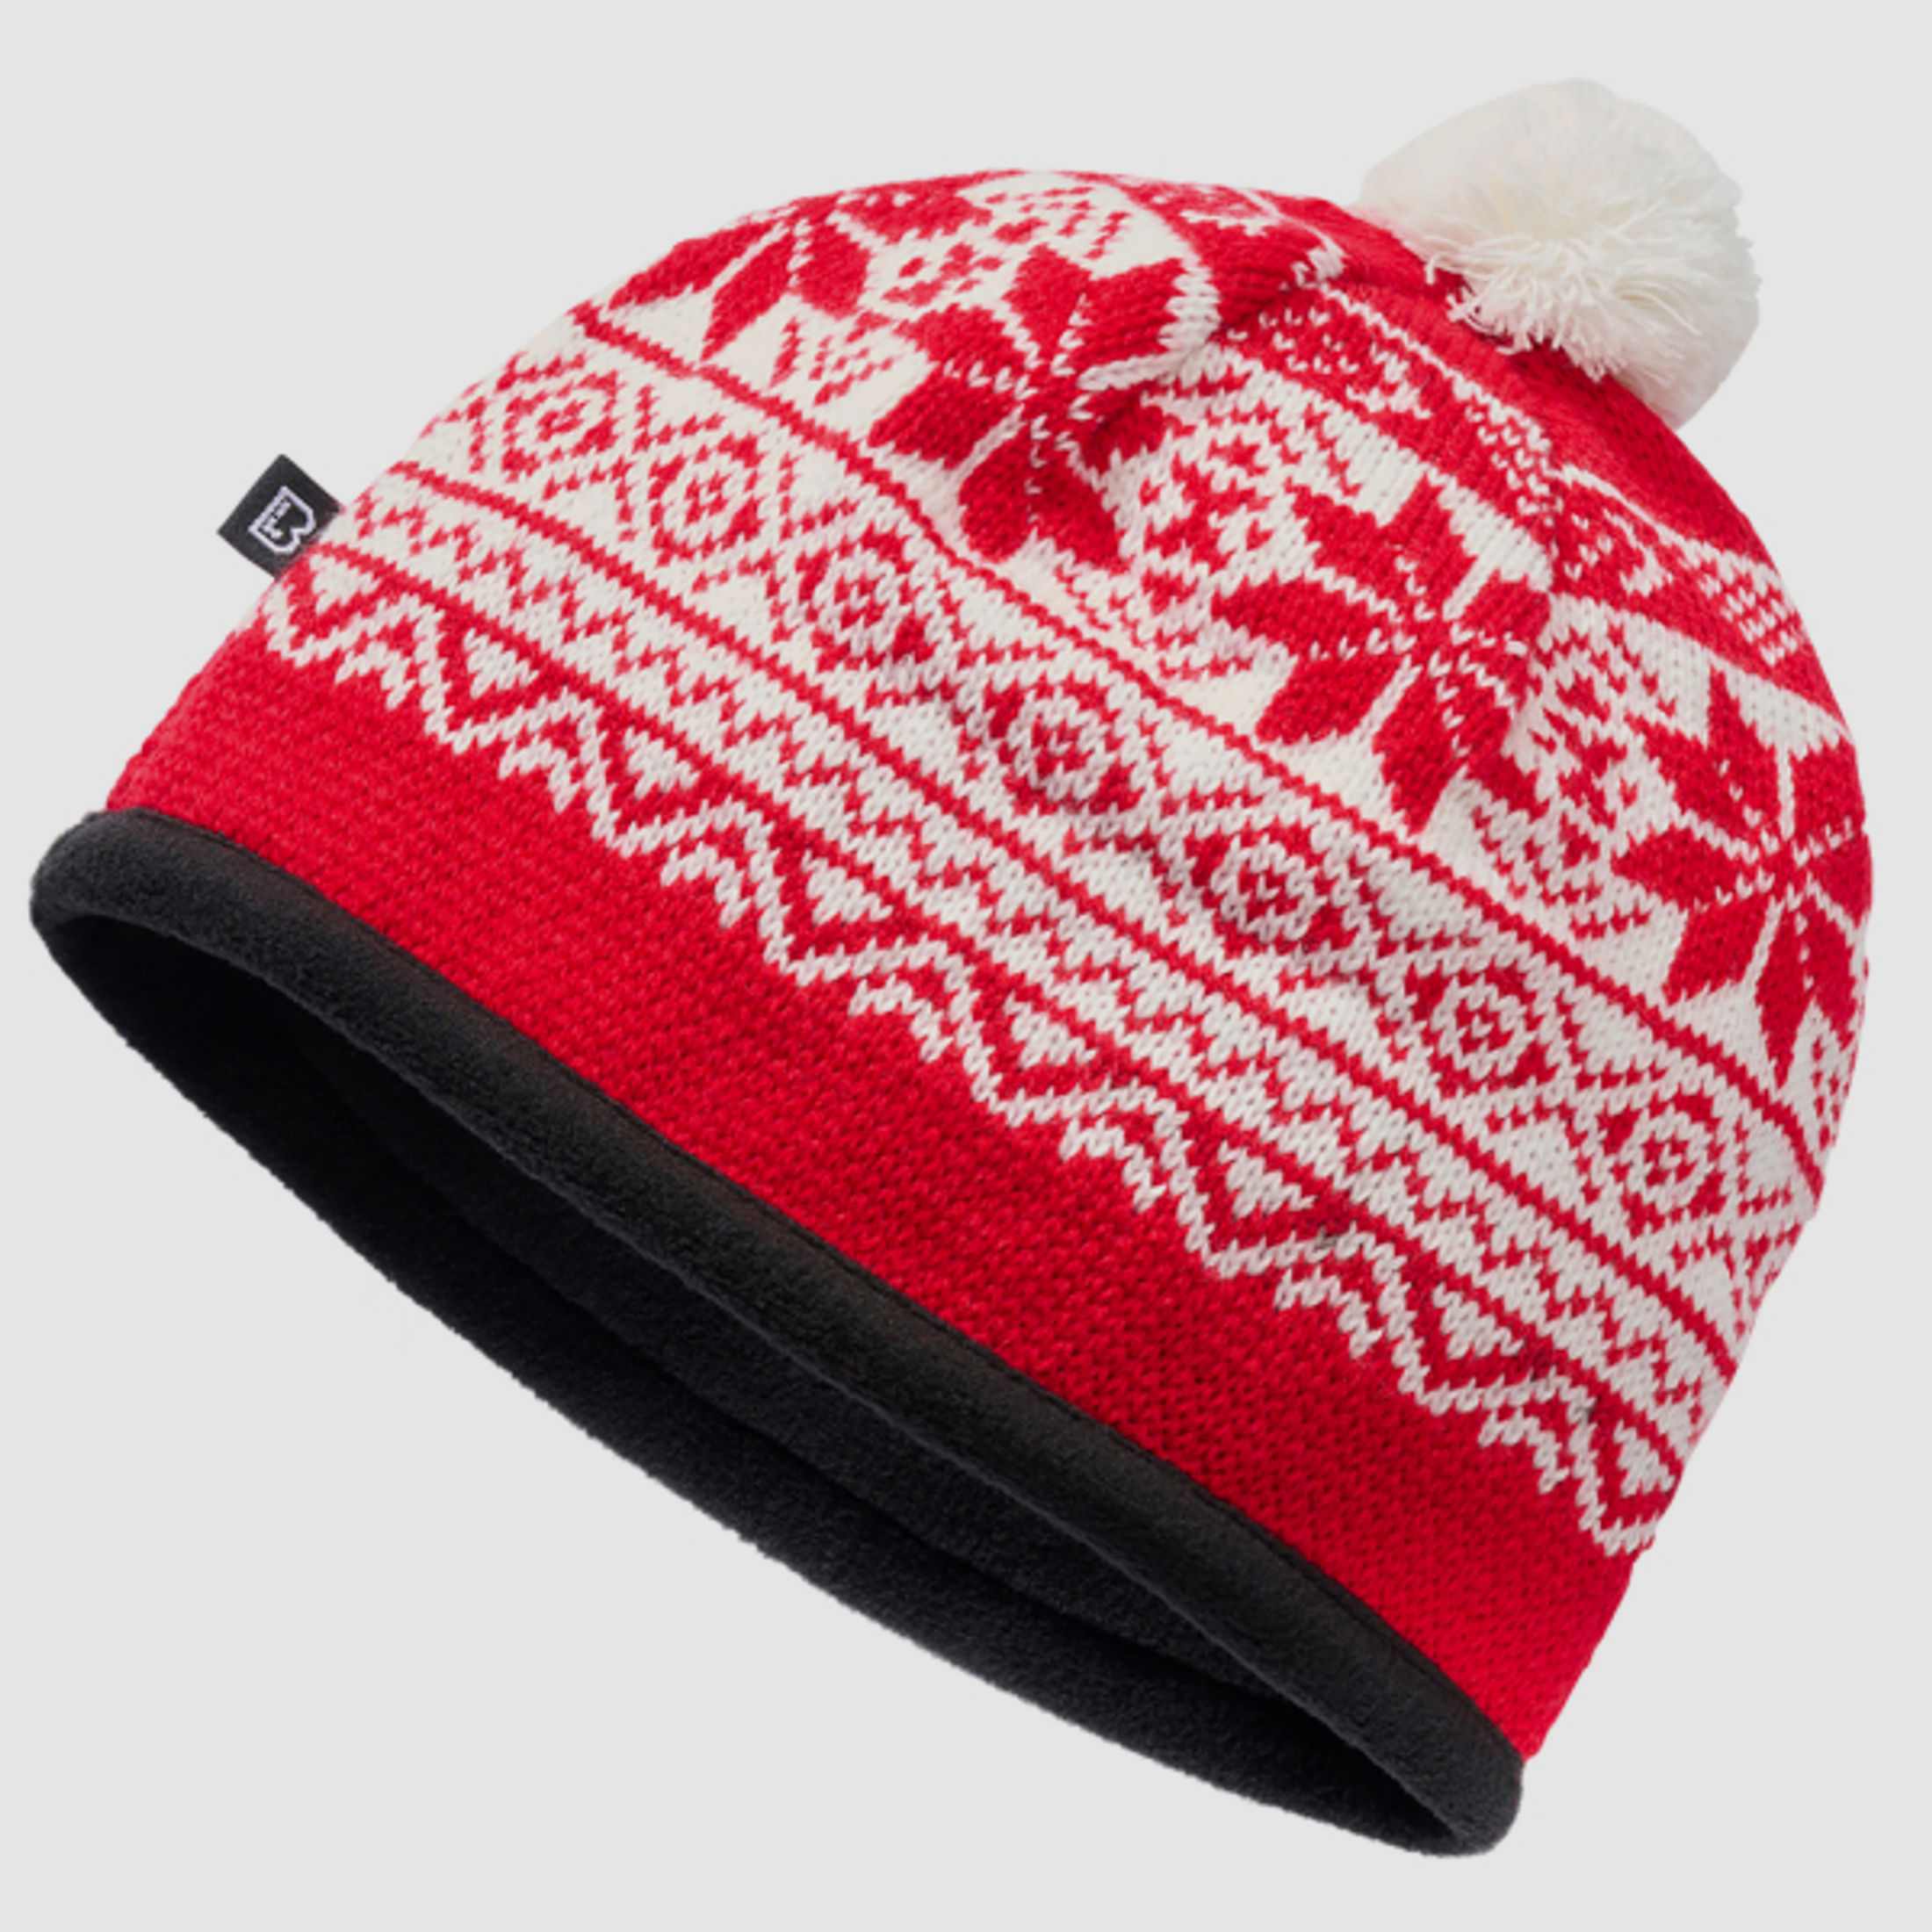 Wintermütze / Snow Cap von Brandit - Rot - Unigröße - skandinavisches Muster - Pudelmütze